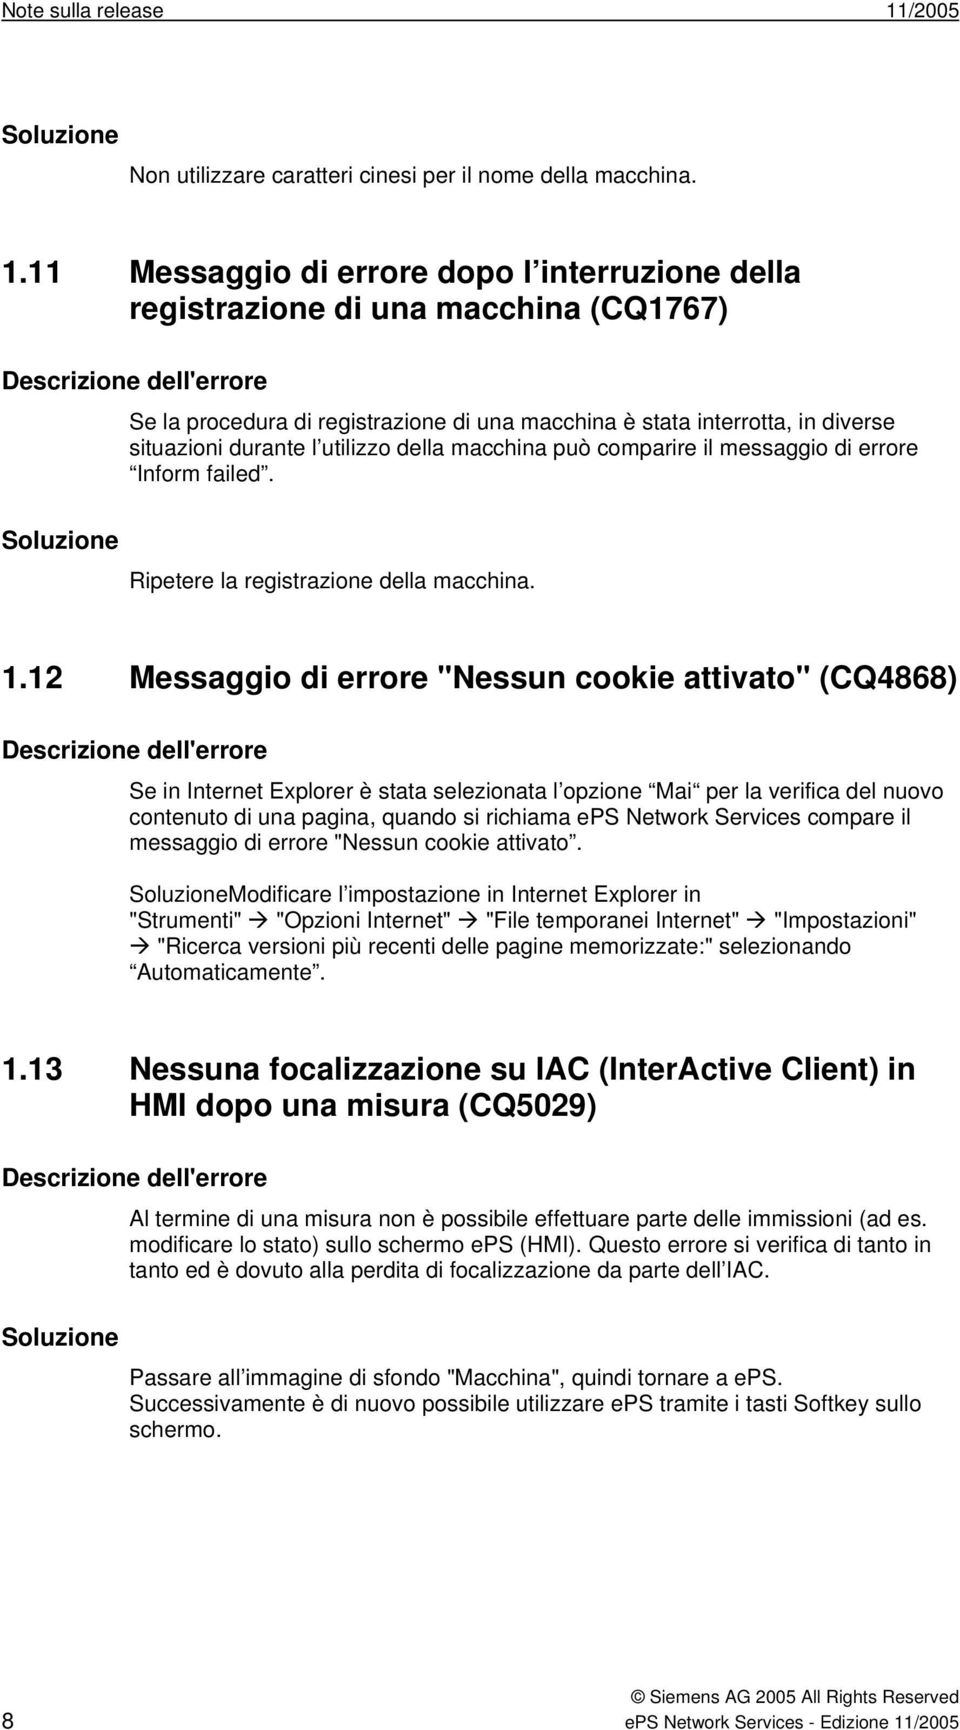 11 Messaggio di errore dopo l interruzione della registrazione di una macchina (CQ1767) Se la procedura di registrazione di una macchina è stata interrotta, in diverse situazioni durante l utilizzo